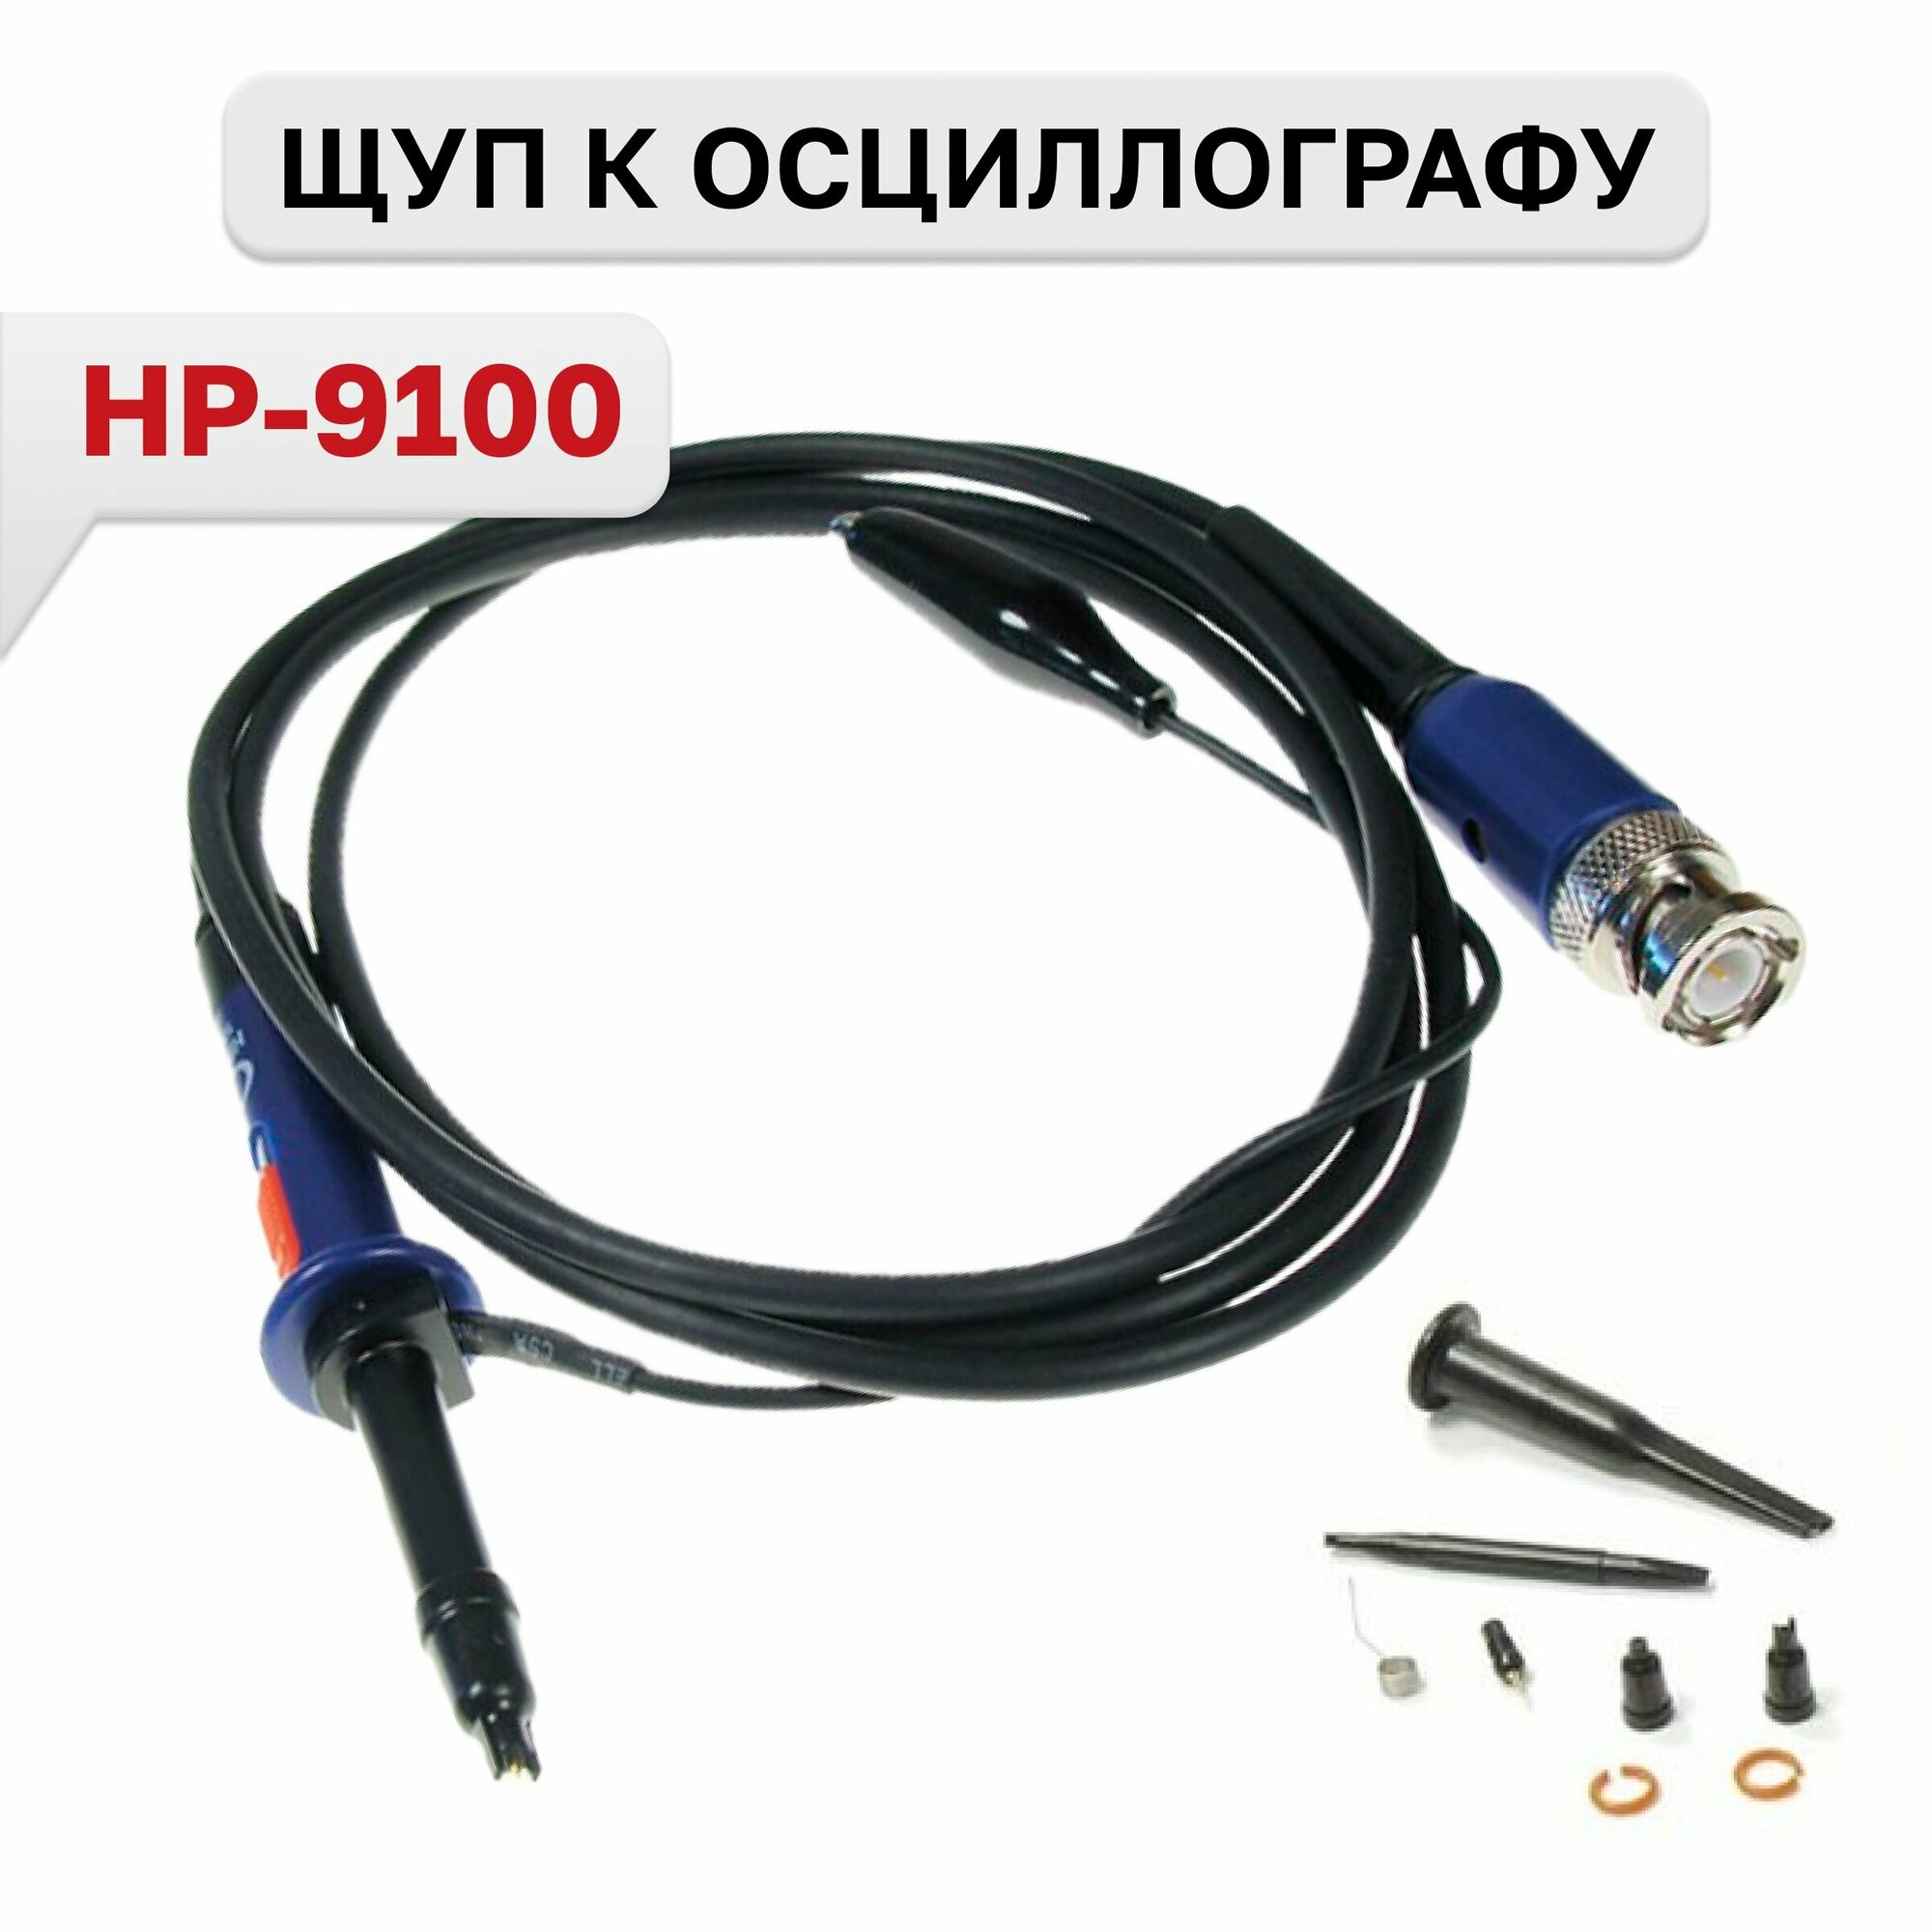 HP-9100 Щуп к осциллографу с делителем 1:10 100МГц